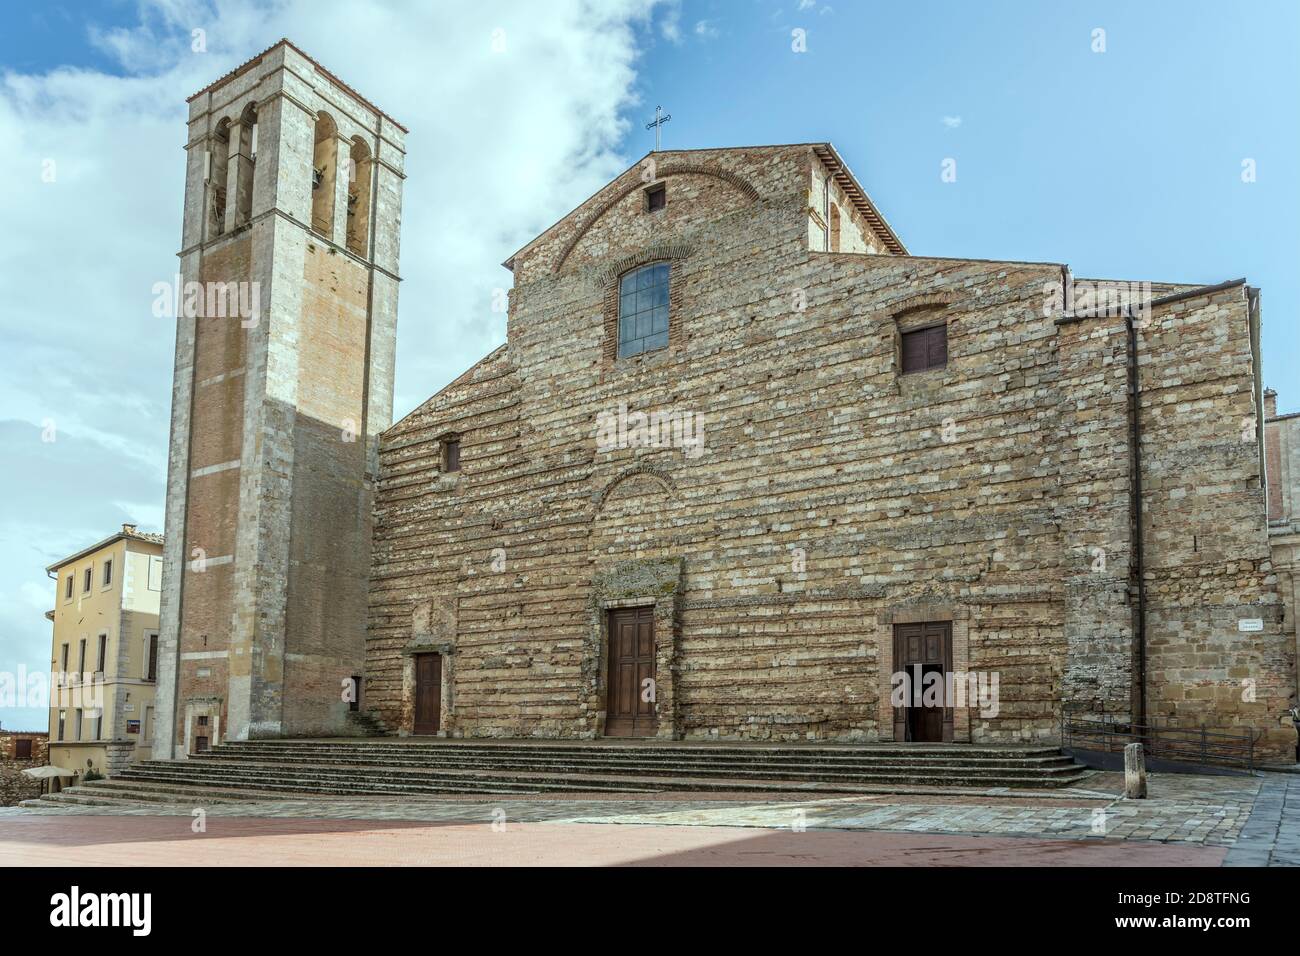 Paysage urbain avec façade inachevée de la cathédrale de la Renaissance dans la ville historique au sommet d'une colline, tourné à Montepulciano, Sienne, Toscane, Italie Banque D'Images